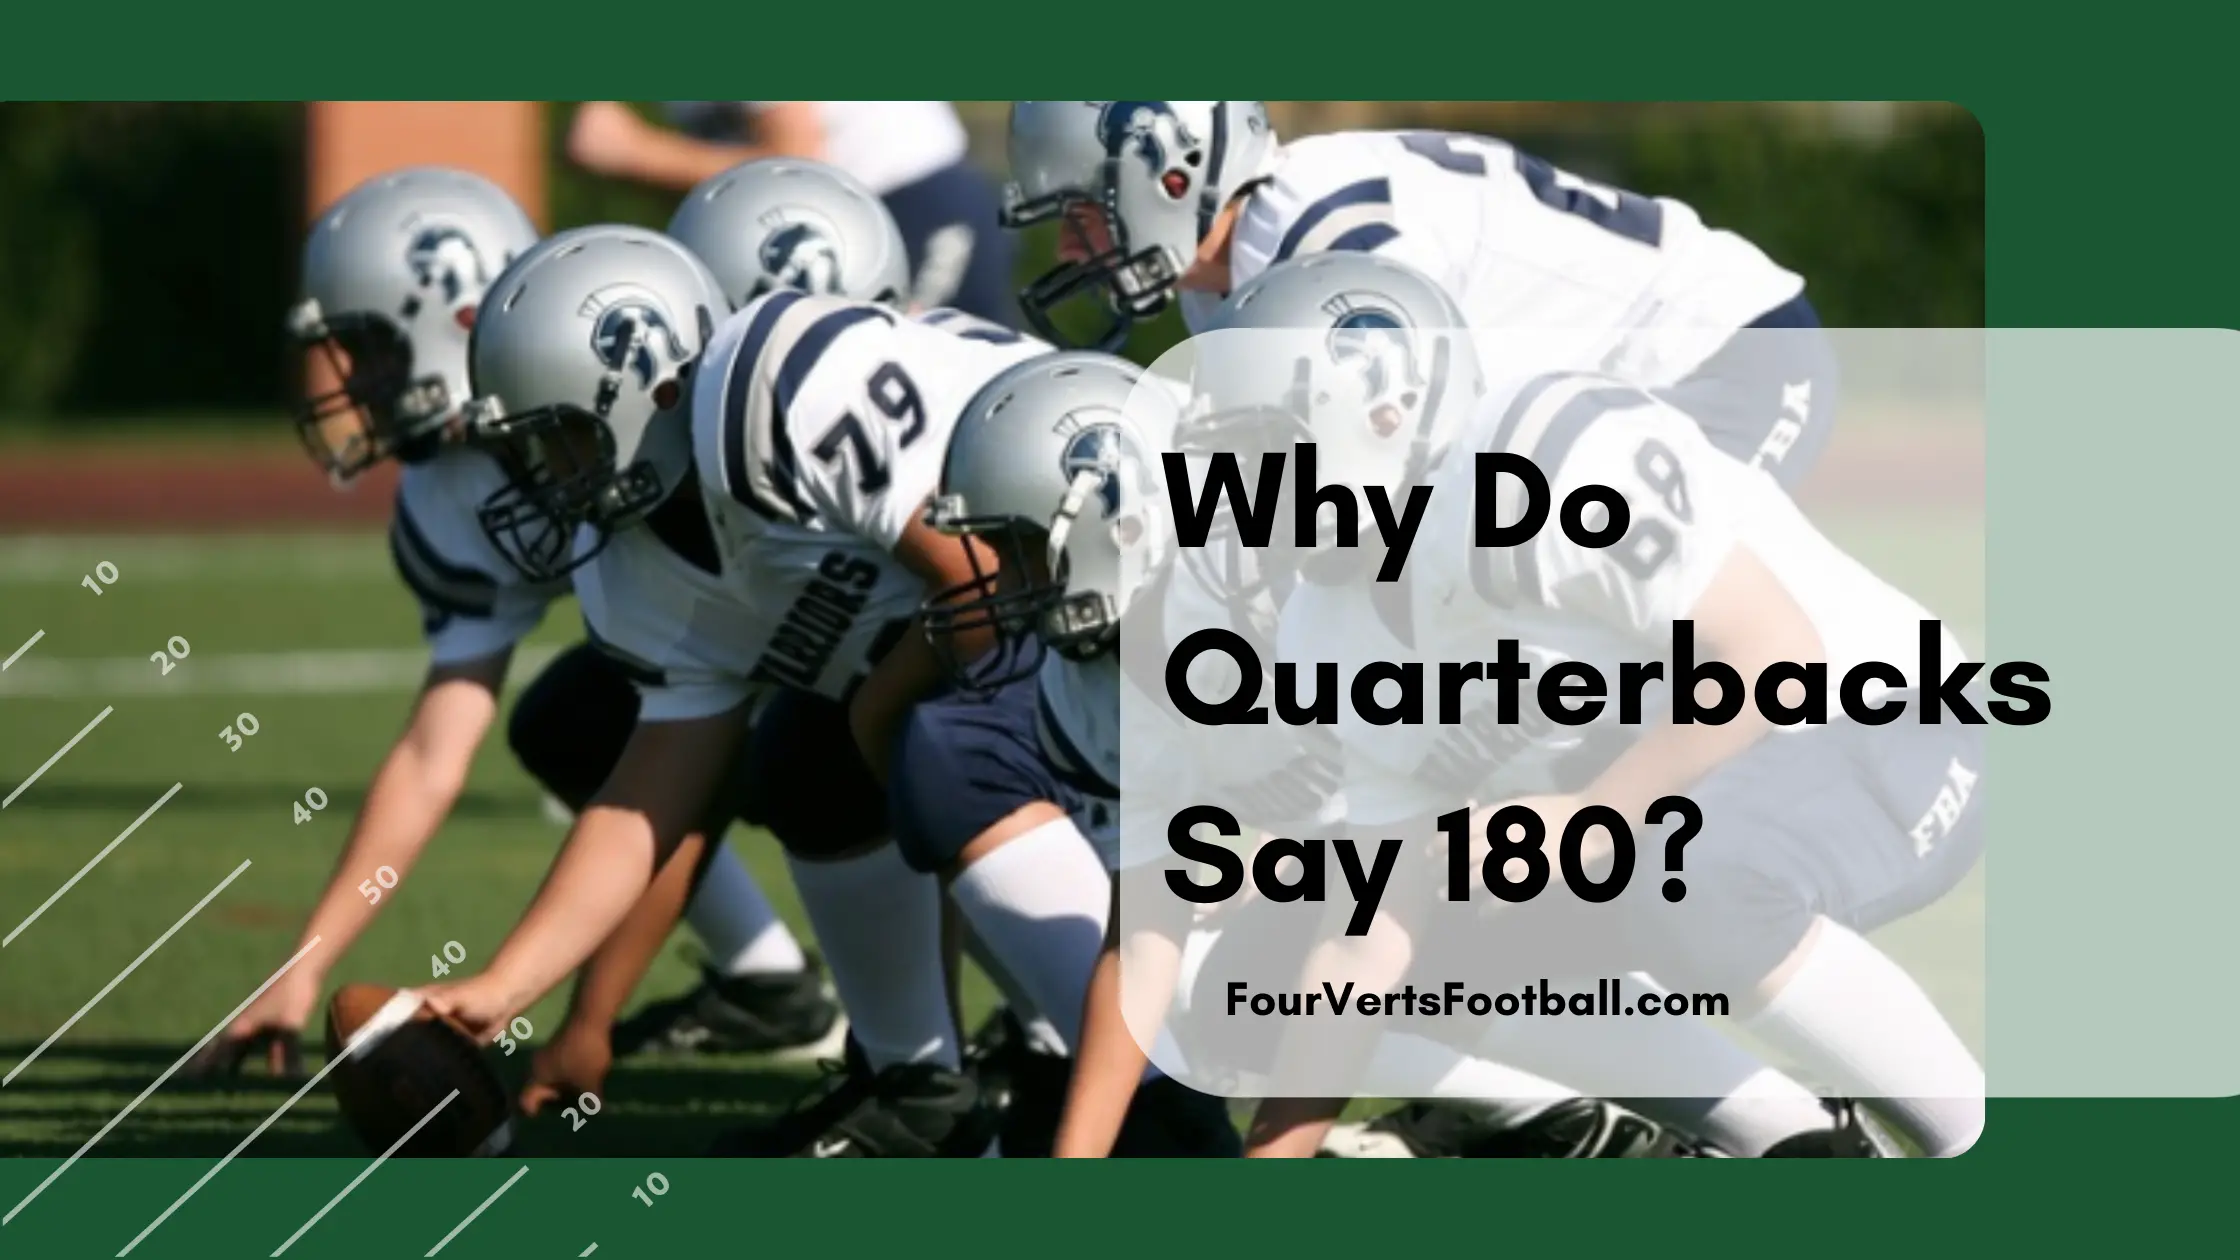 Why do quarterbacks say 180